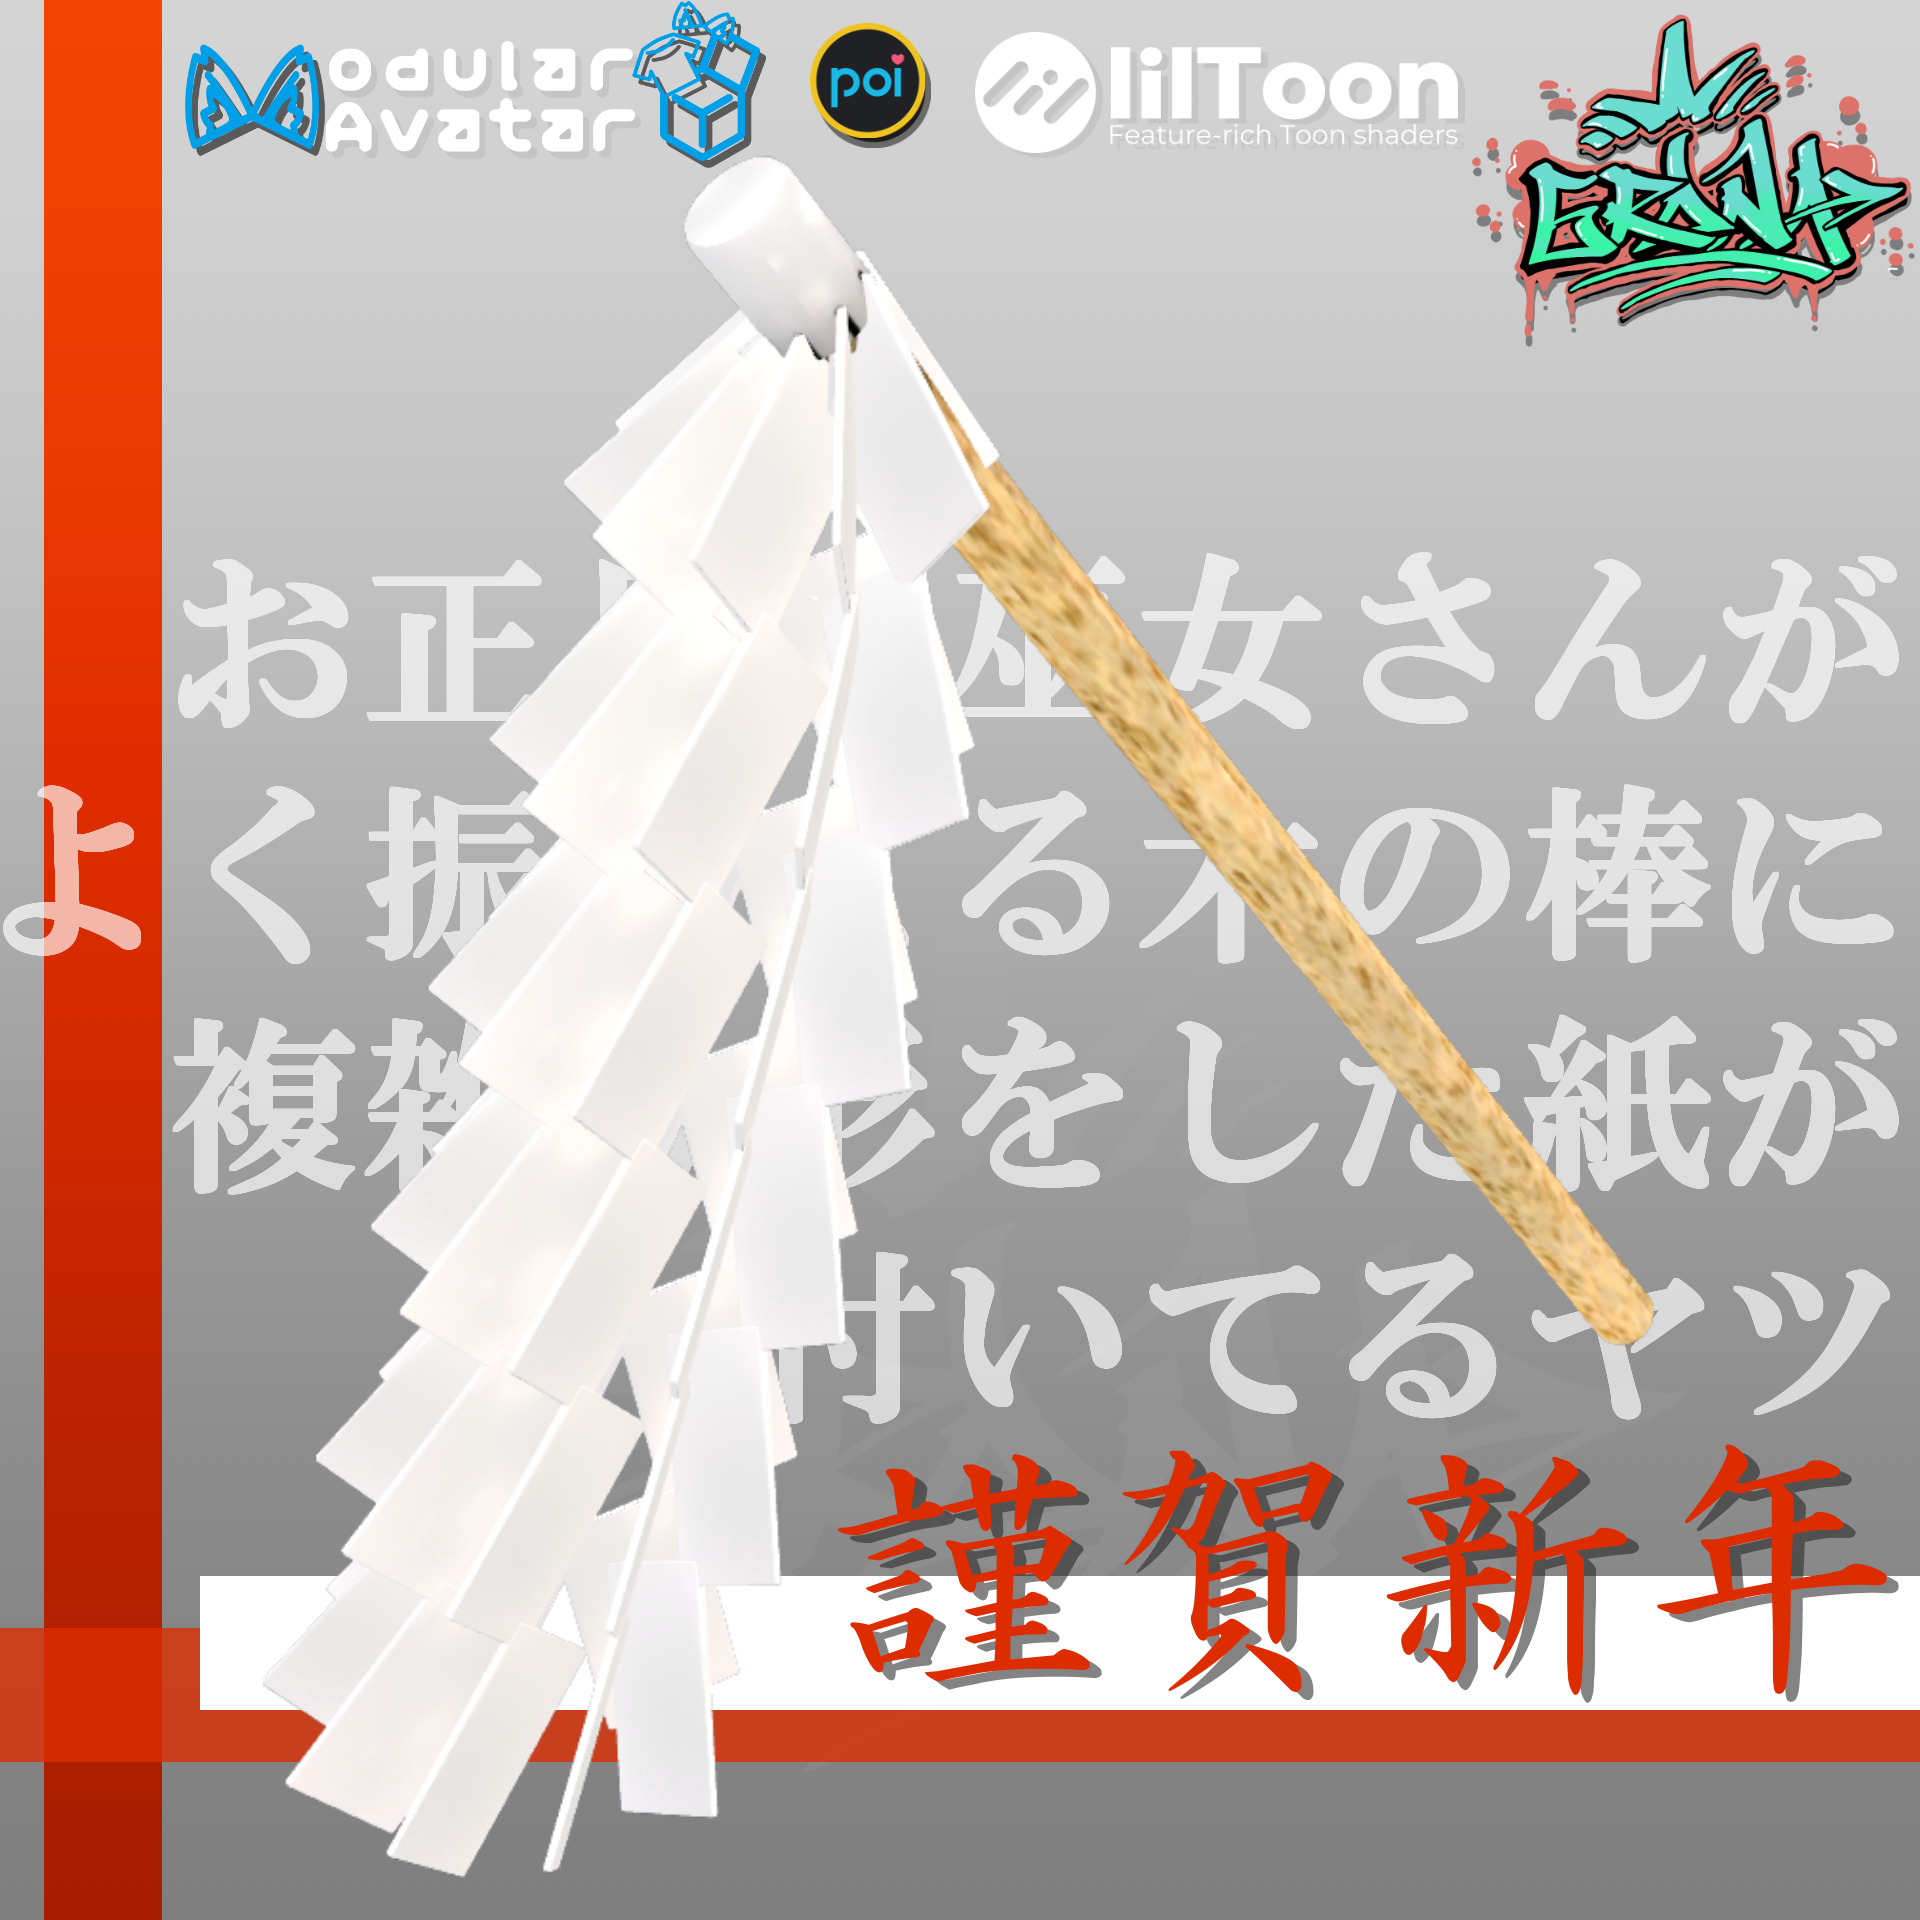 【謹賀新年】お正月に巫女さんがよく振ってる木の棒に複雑な形を 